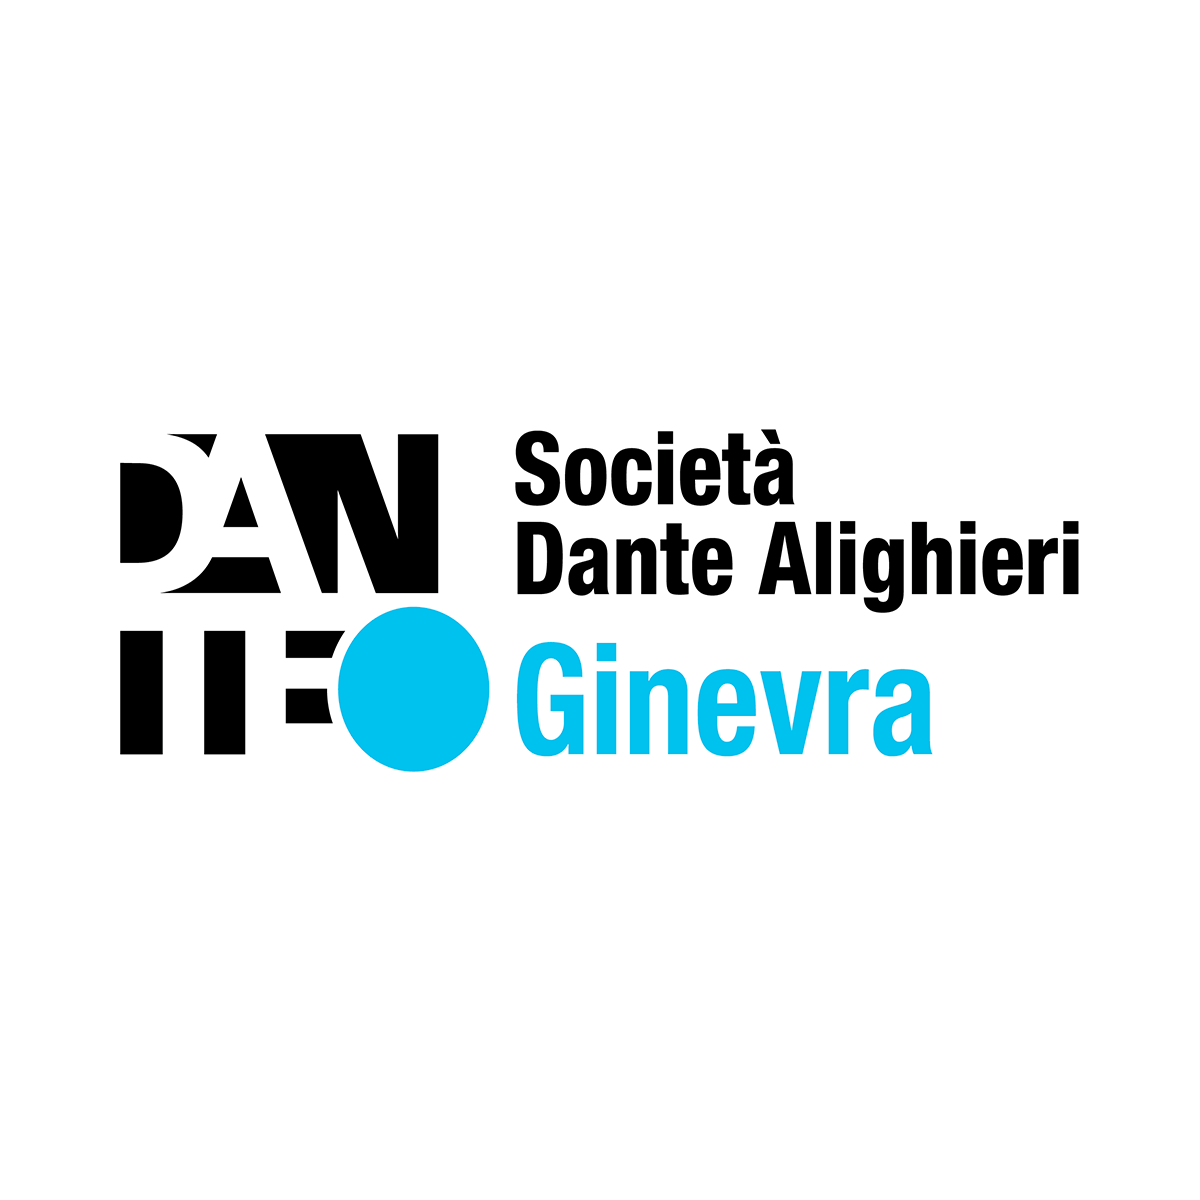 Società Dante Alighieri Genève